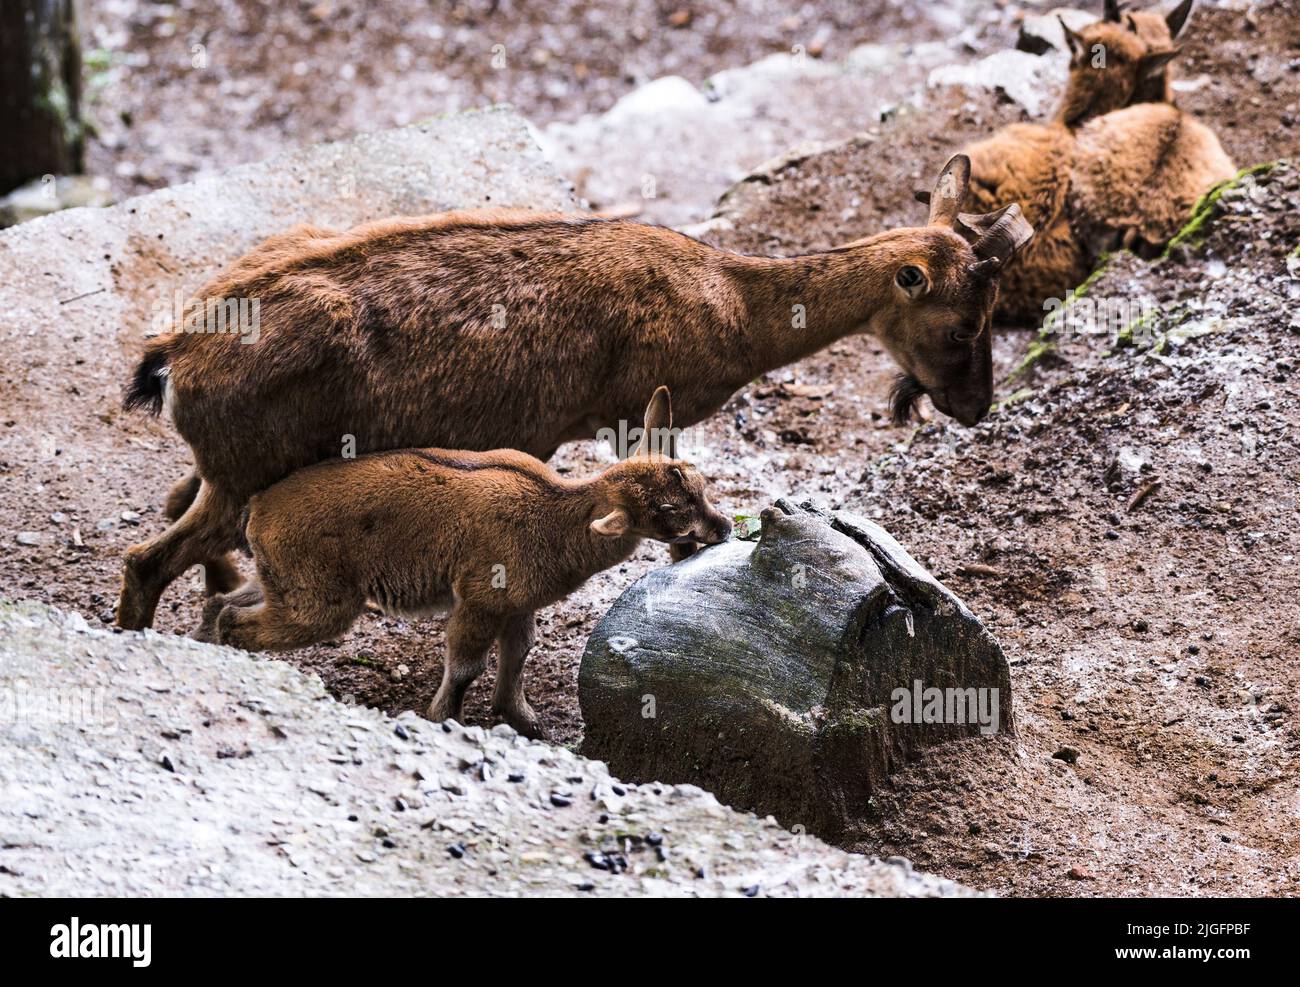 Der Markhor (Capra falconeri) ist eine große Capra-Art, die in Zentralasien, dem Karakorum und dem Himalaya beheimatet ist. Sie ist auf der Roten Liste der IUCN als „Near Threatened“ gelistet. Der Markhor ist das Nationaltier Pakistans und gilt als König der Wildziegen. Dieses Tier ist tagtäglich und hauptsächlich am frühen Morgen und späten Nachmittag aktiv. Eine Markhor-Mutter und ihre Kitze (Baby) befinden sich im Konservierungs- und Zuchtzentrum Padmaja Naidu Himalayan Zoological Park (PNHZP) in Darjeeling, Westbengalen, Indien. Stockfoto